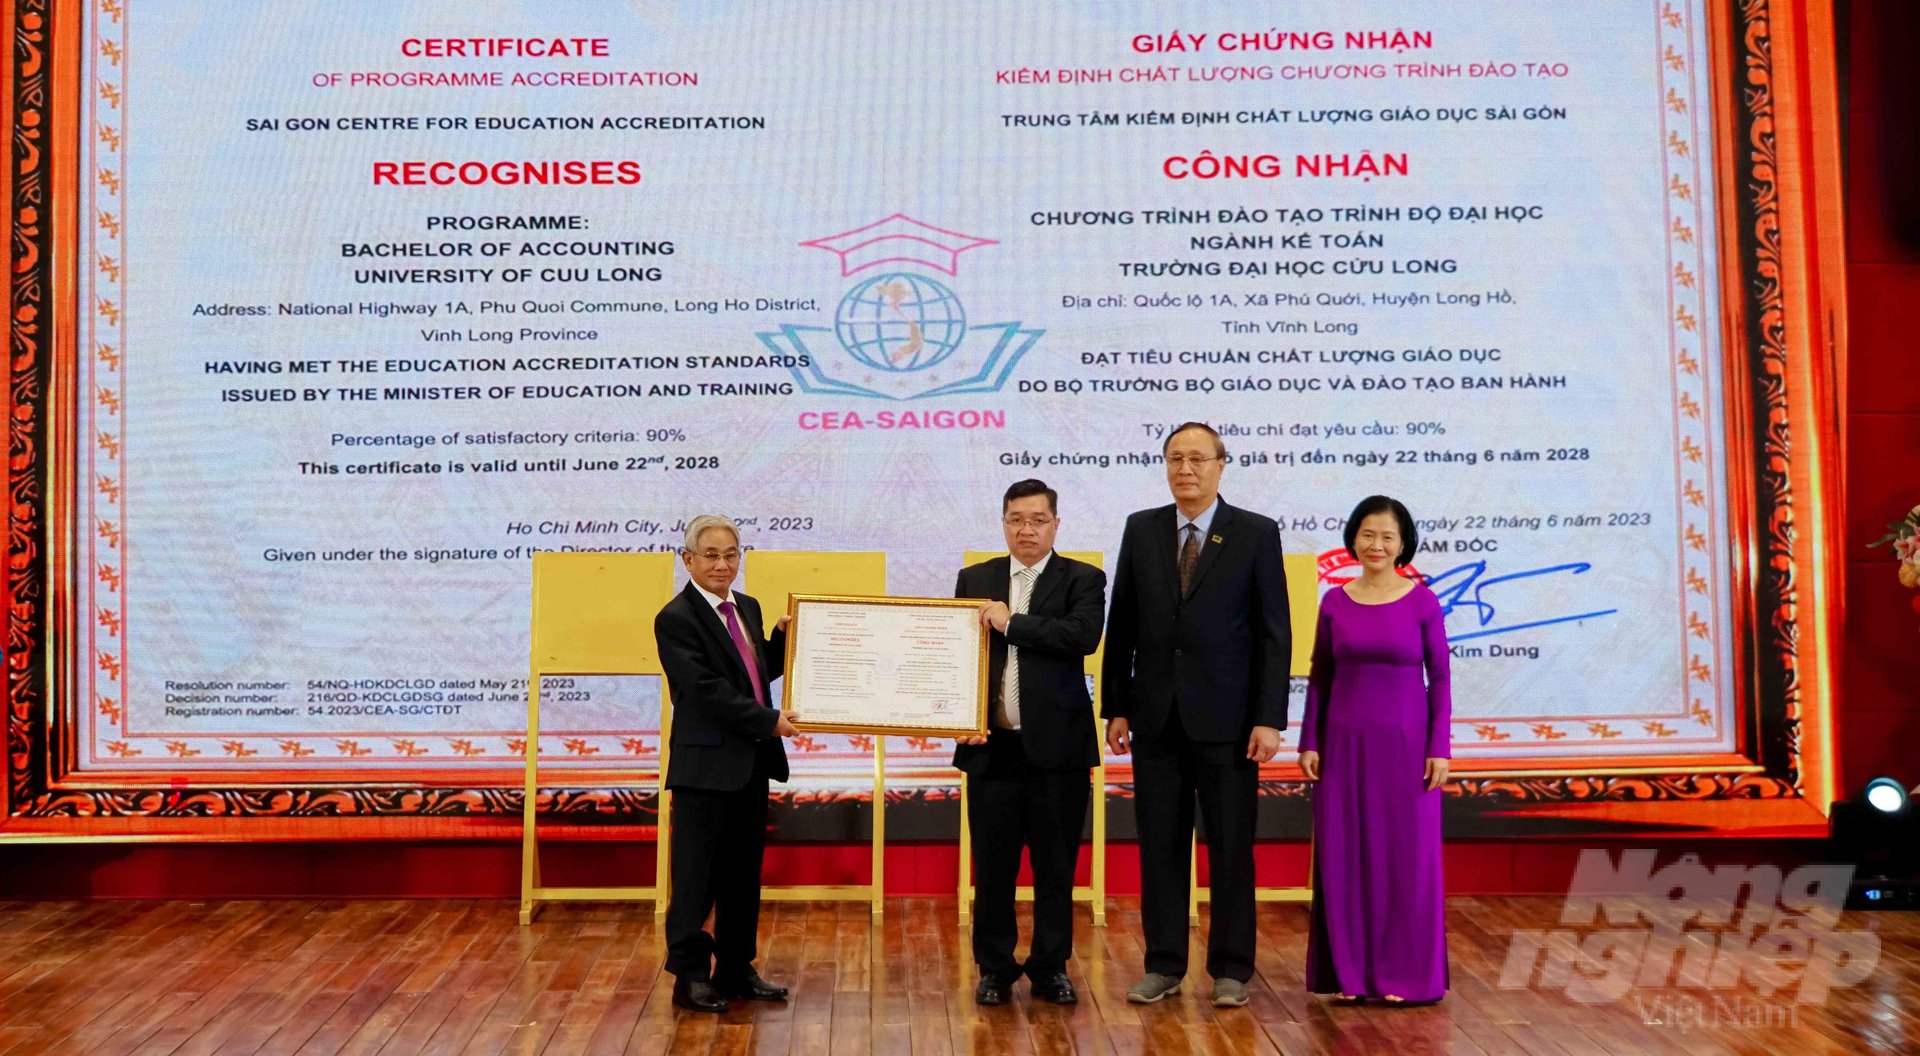 Ban Giám hiệu trường ĐH Cửu Long đón nhận giấy chứng nhận đạt kiểm định chất lượng cơ sở giáo dục chu kỳ 2 theo quy định của Bộ GD&ĐT. Ảnh: Lê Bình.